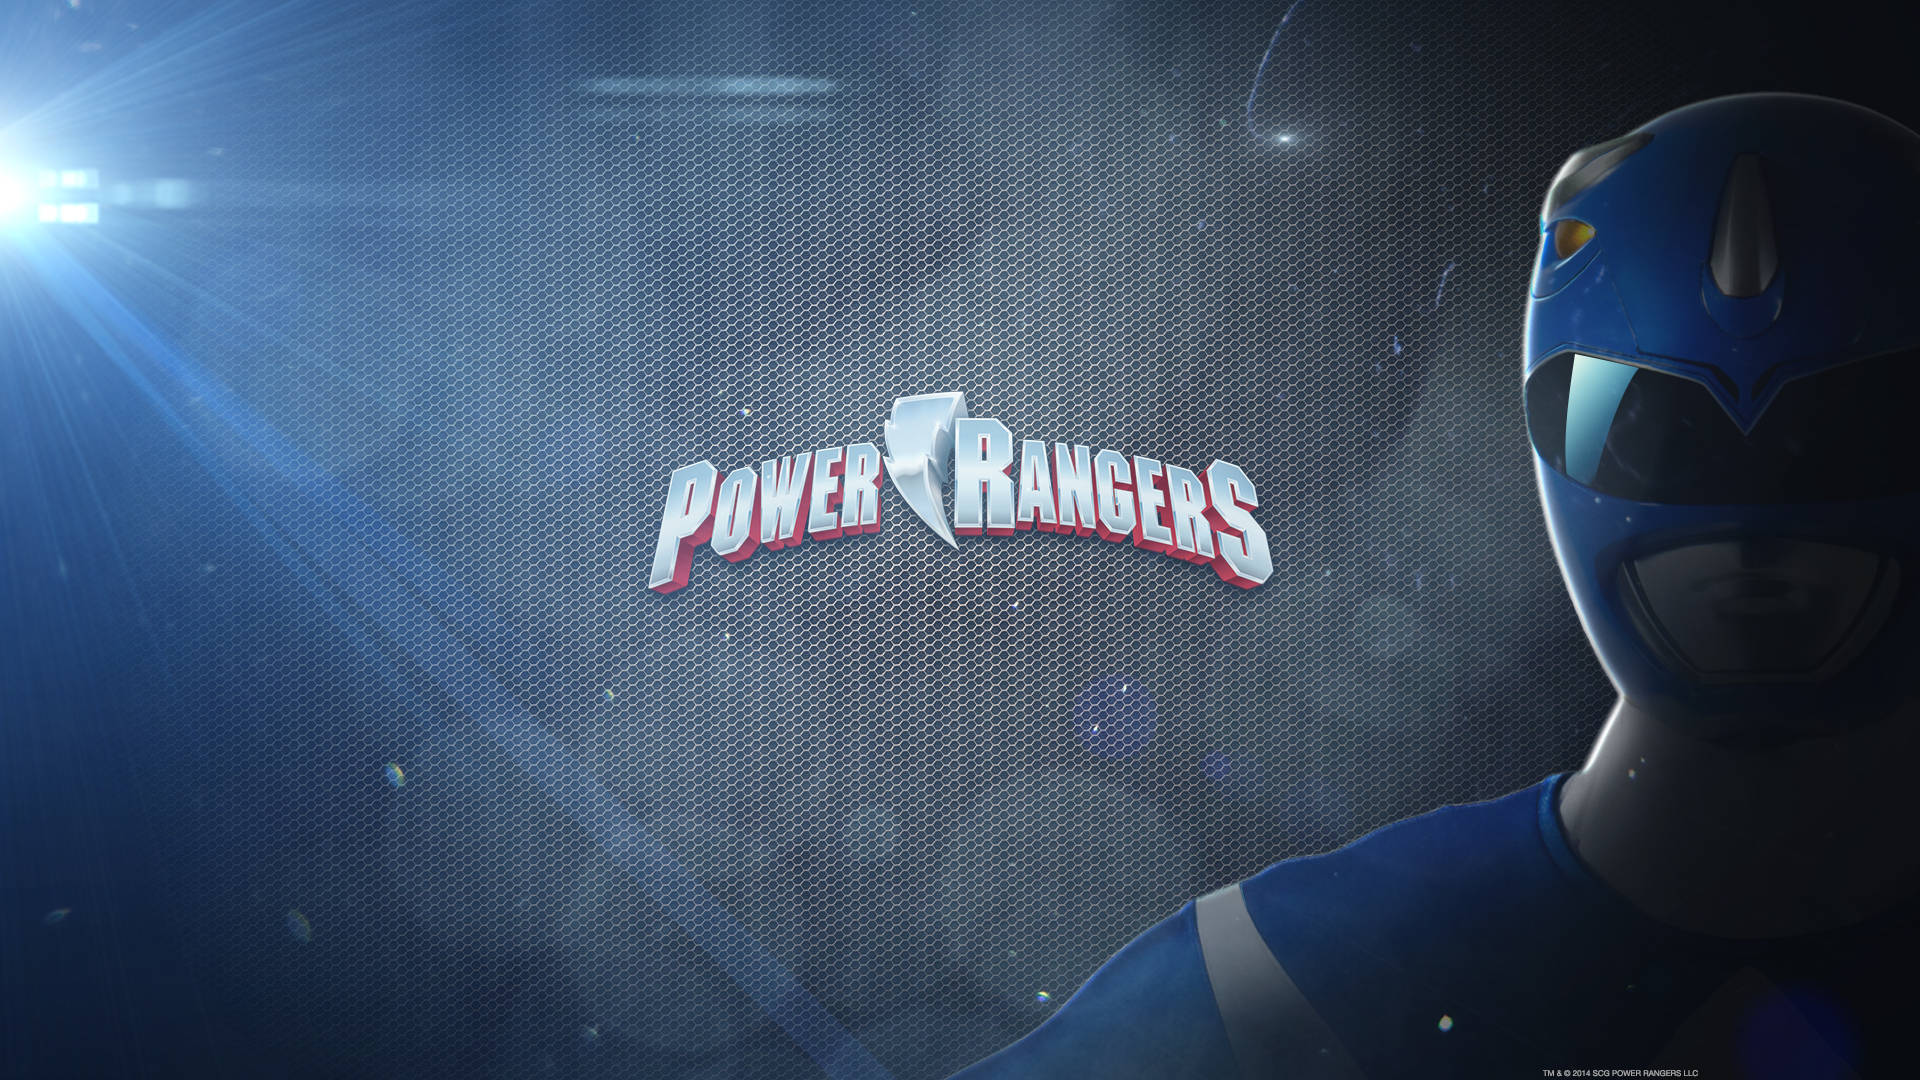 Power Rangers Blue Ranger Poster Background